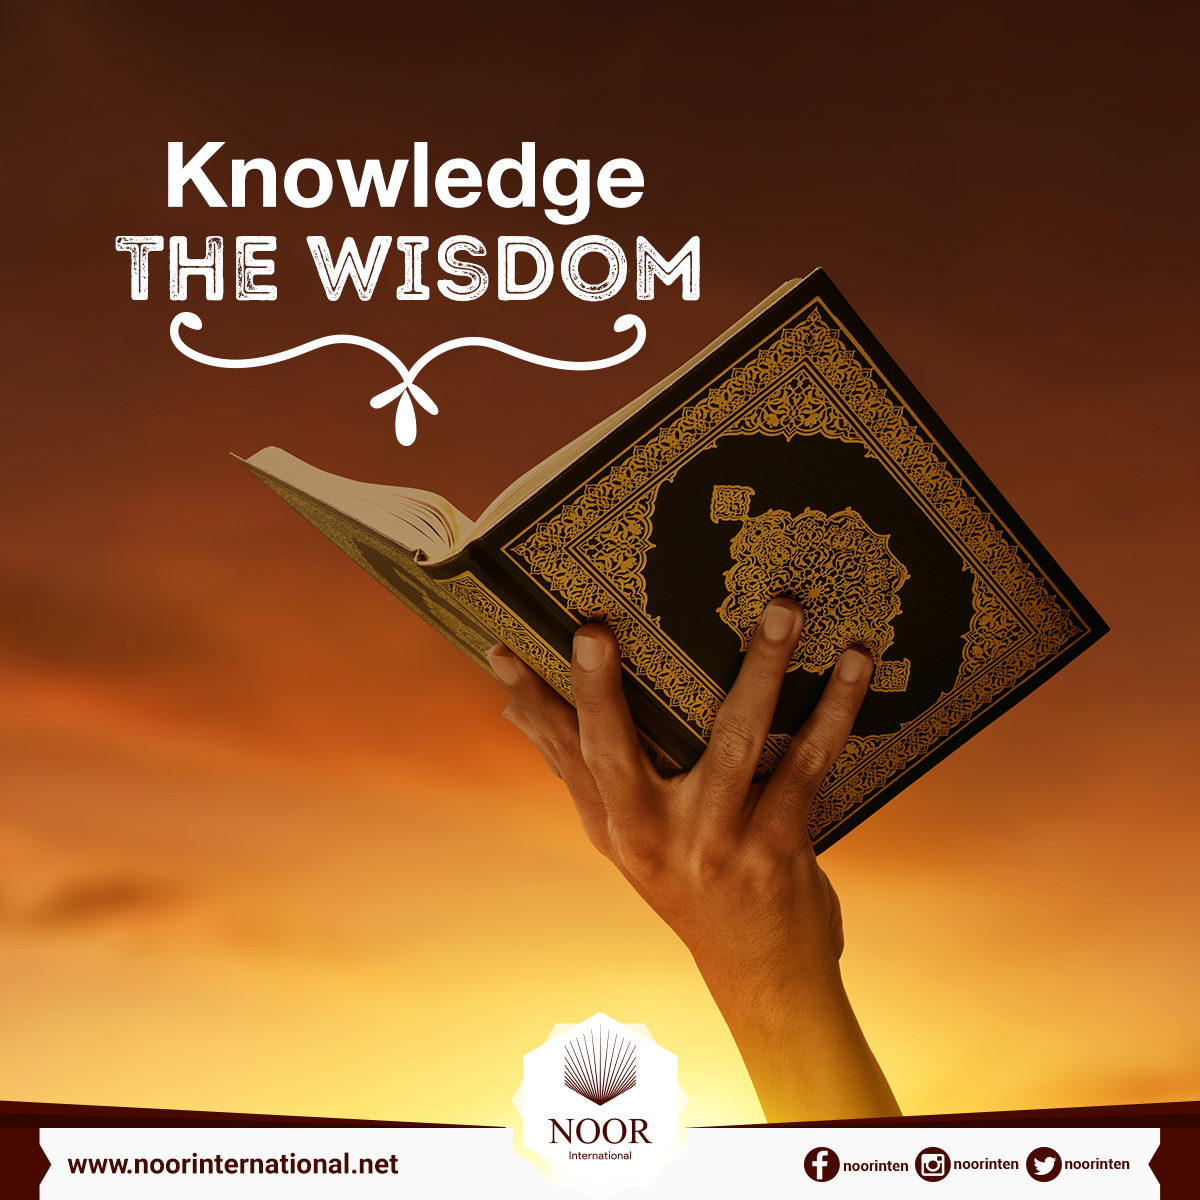 Knowledge … the wisdom